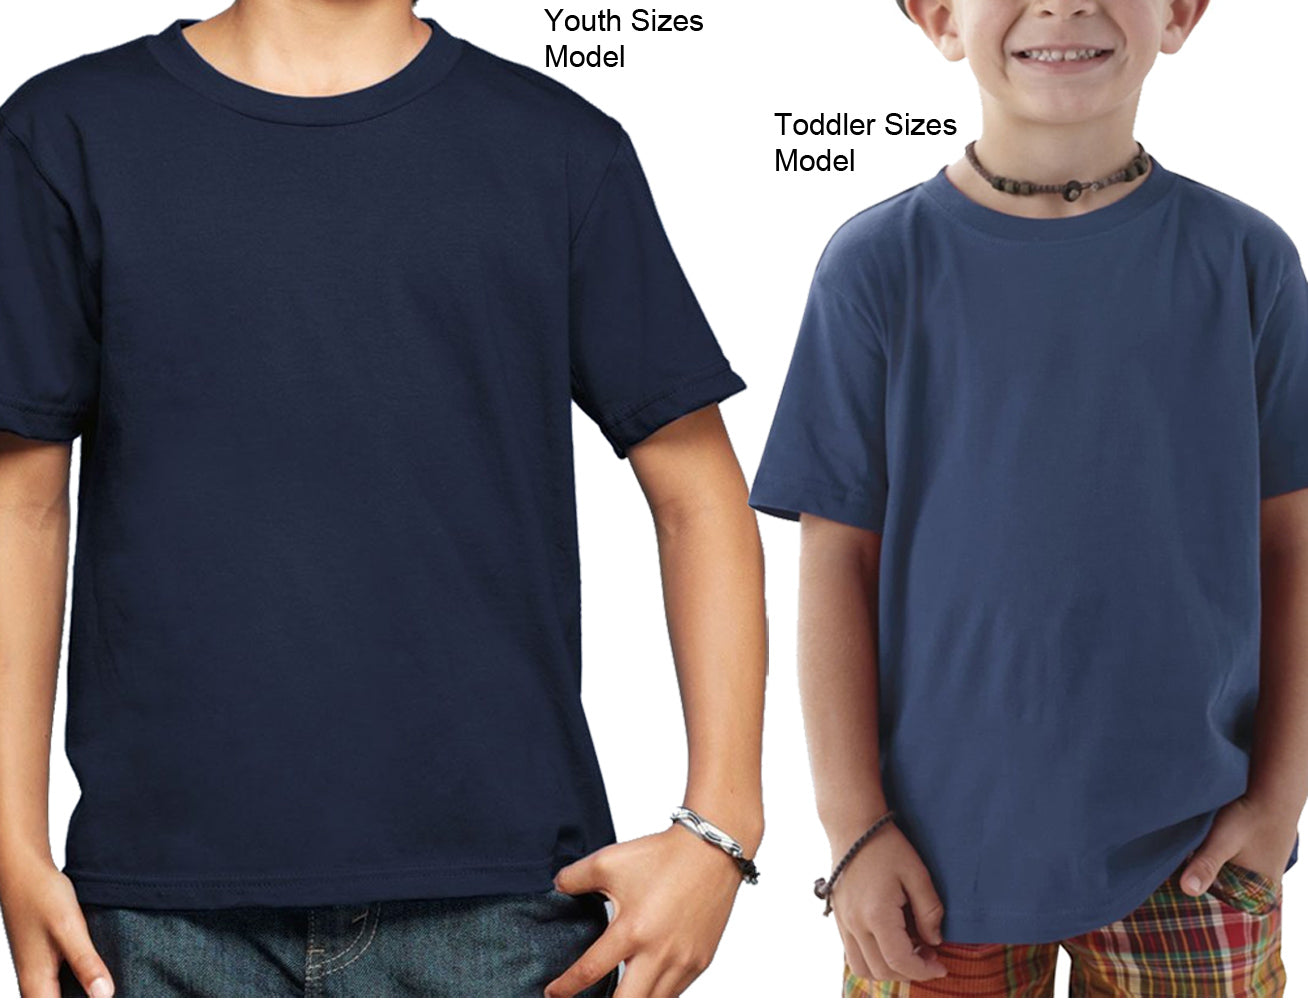 Boy's Hard Pass T-Shirt